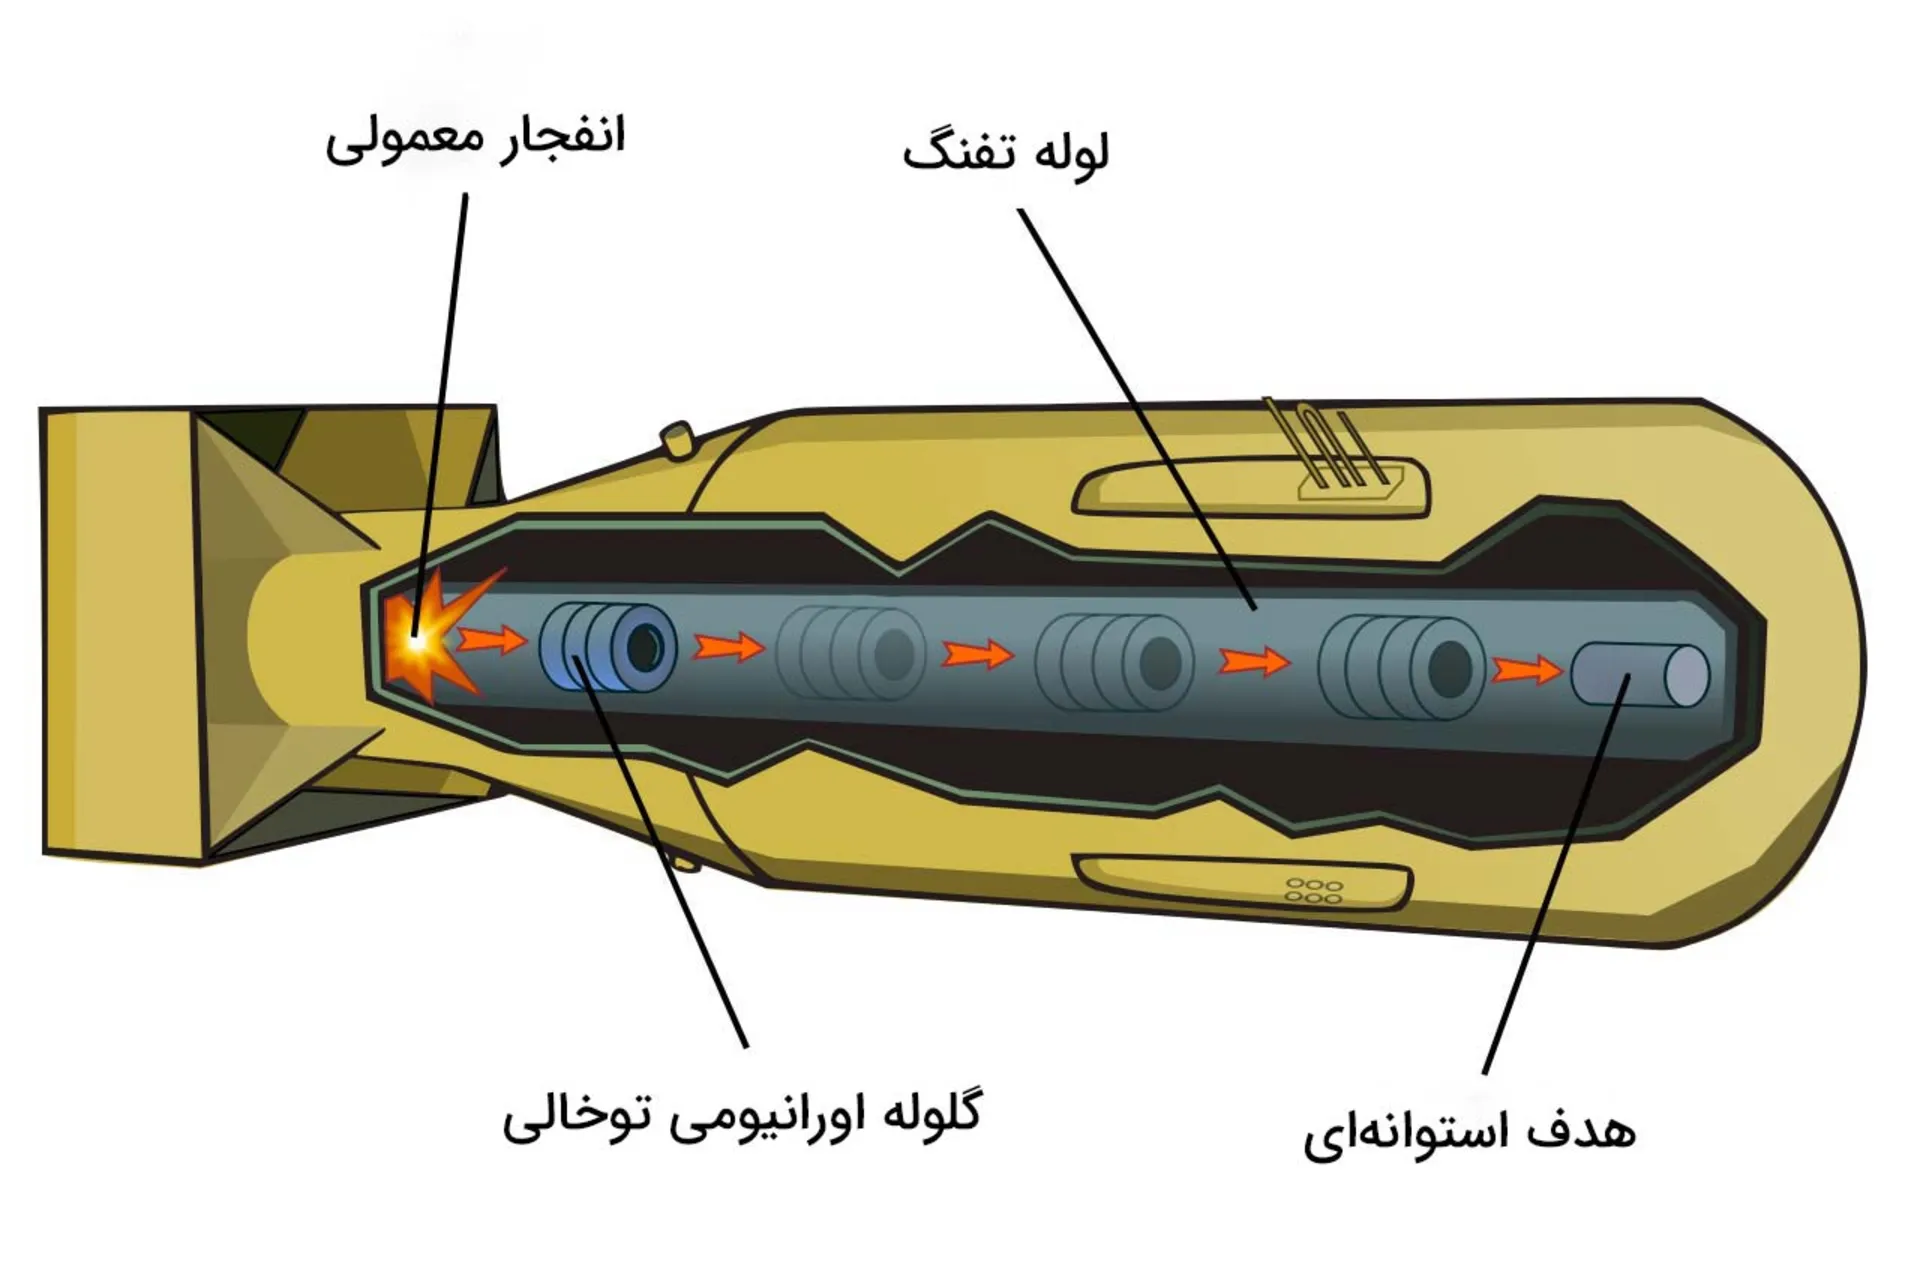 طراحی بمب اتم شکافتی از نوع تفنگی